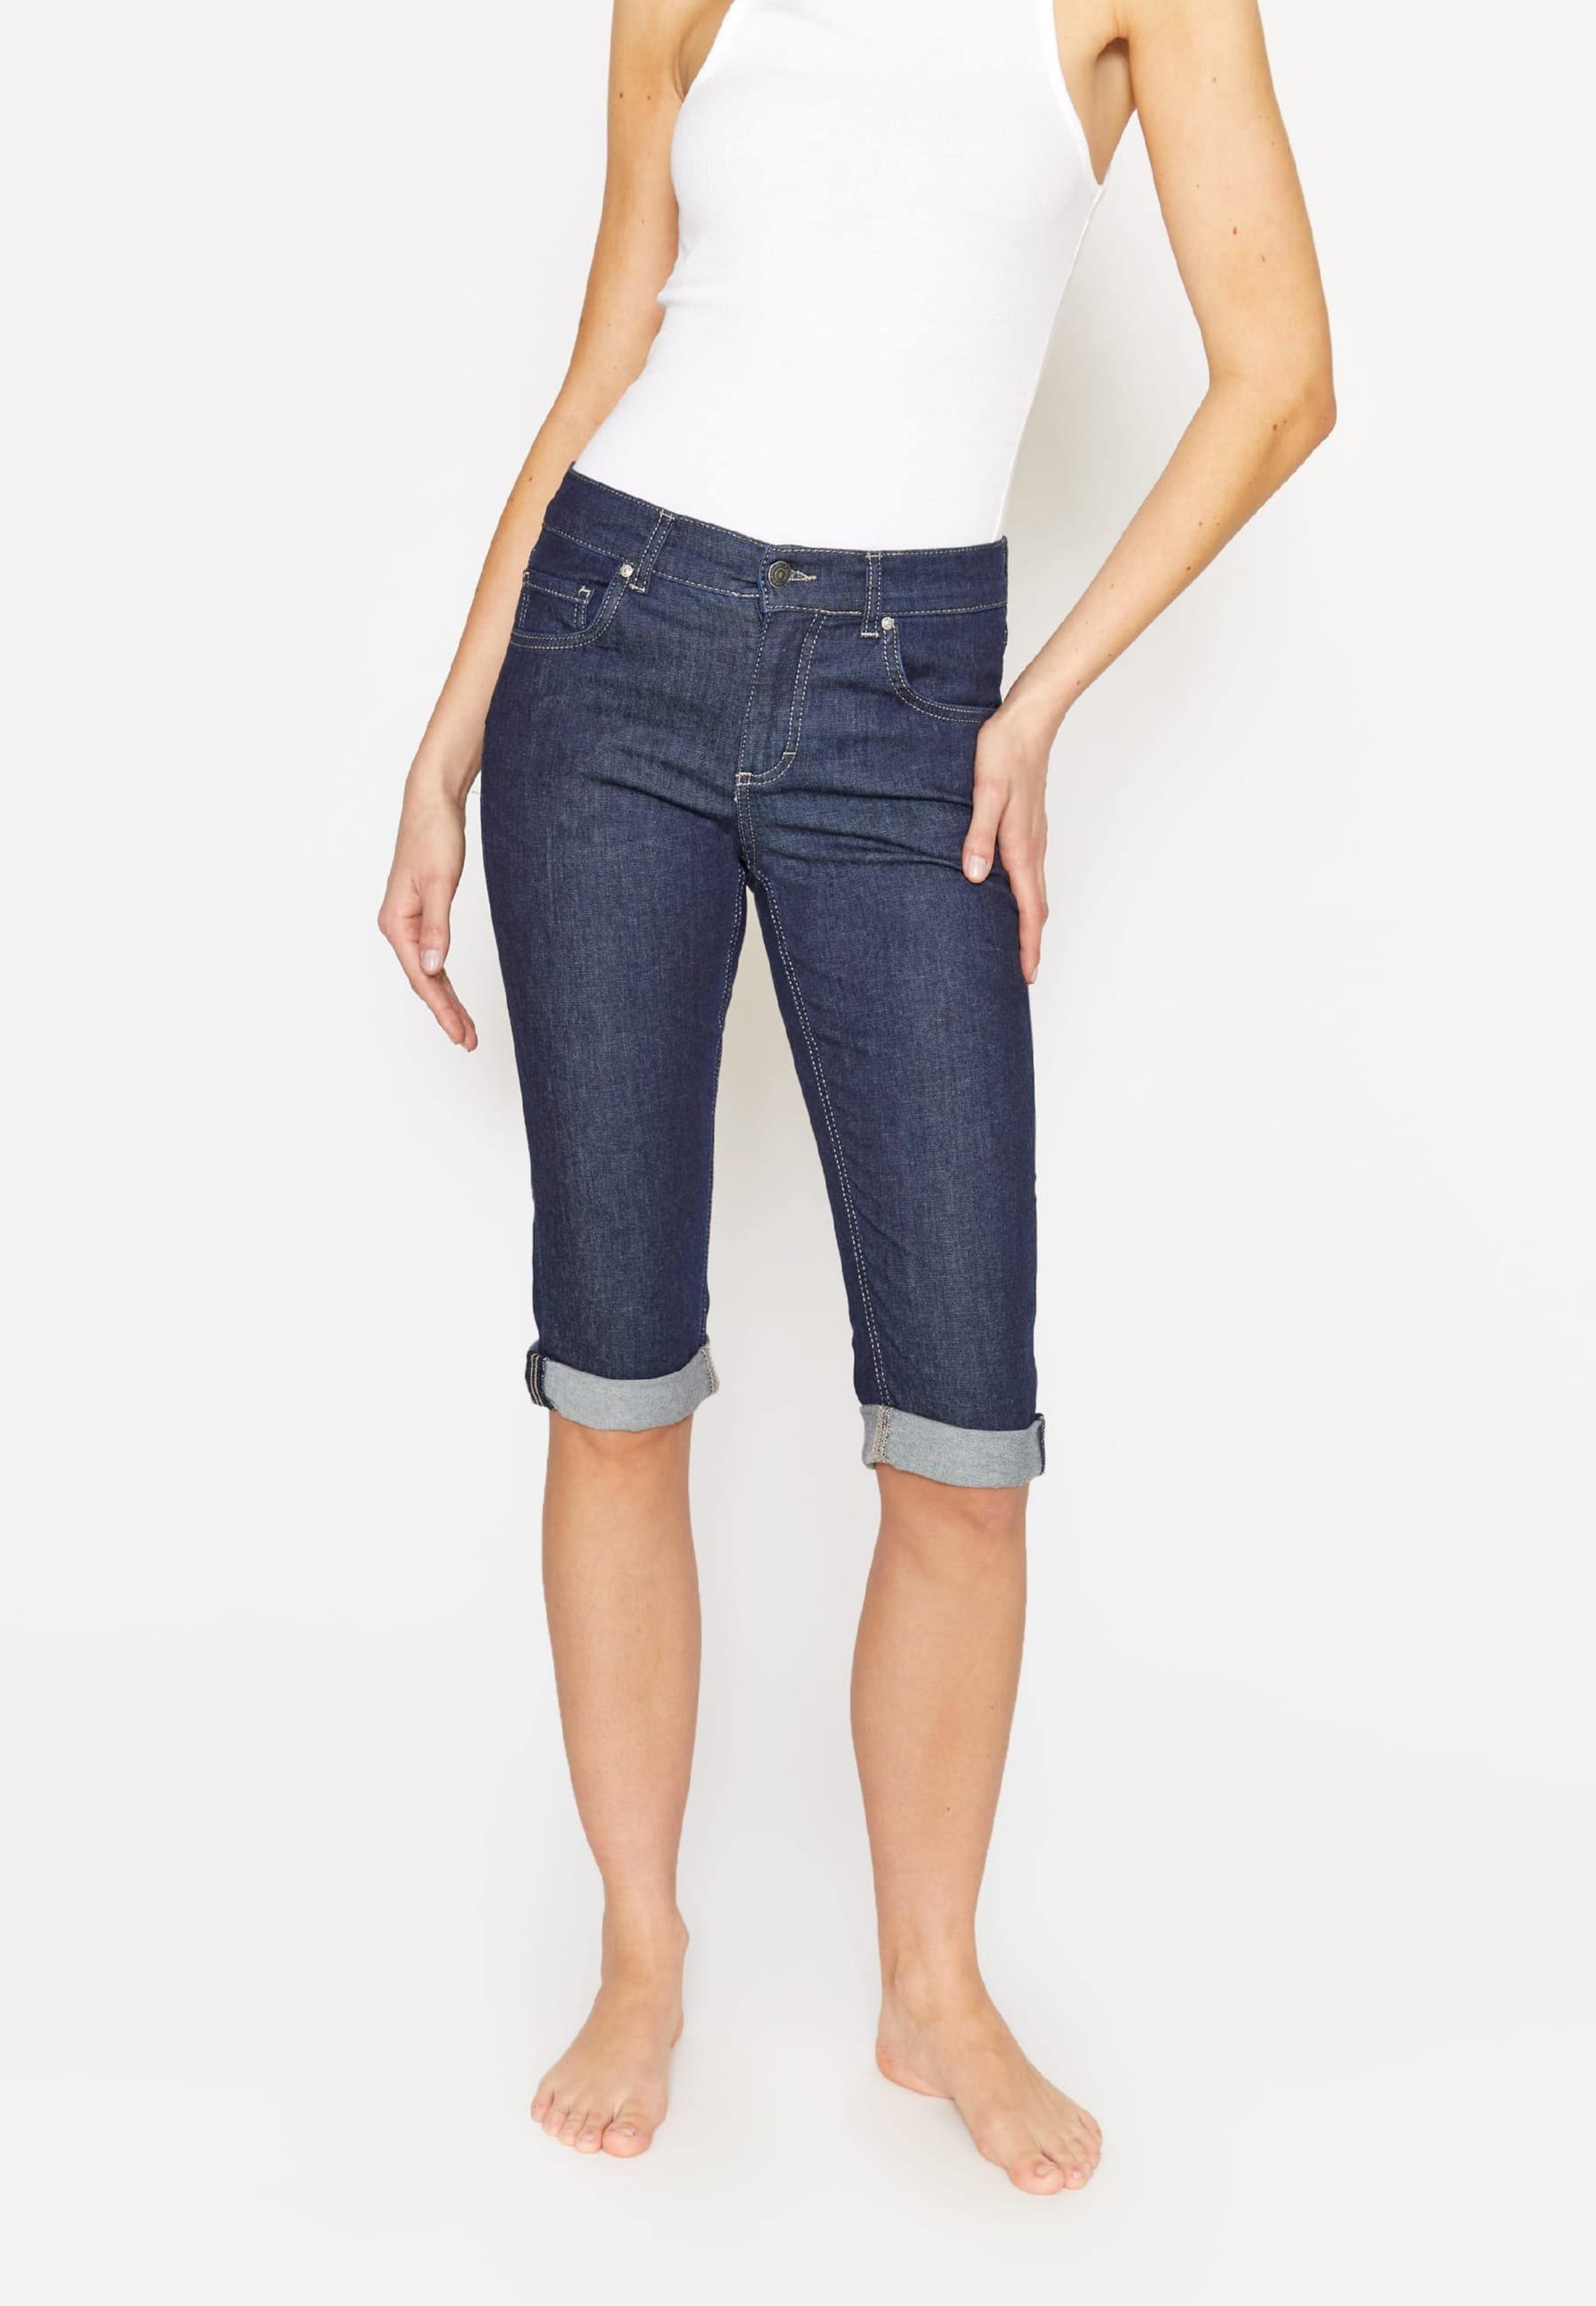 ANGELS 5-Pocket-Jeans Jeans Capri mit mit Label-Applikationen blau Used-Look TU